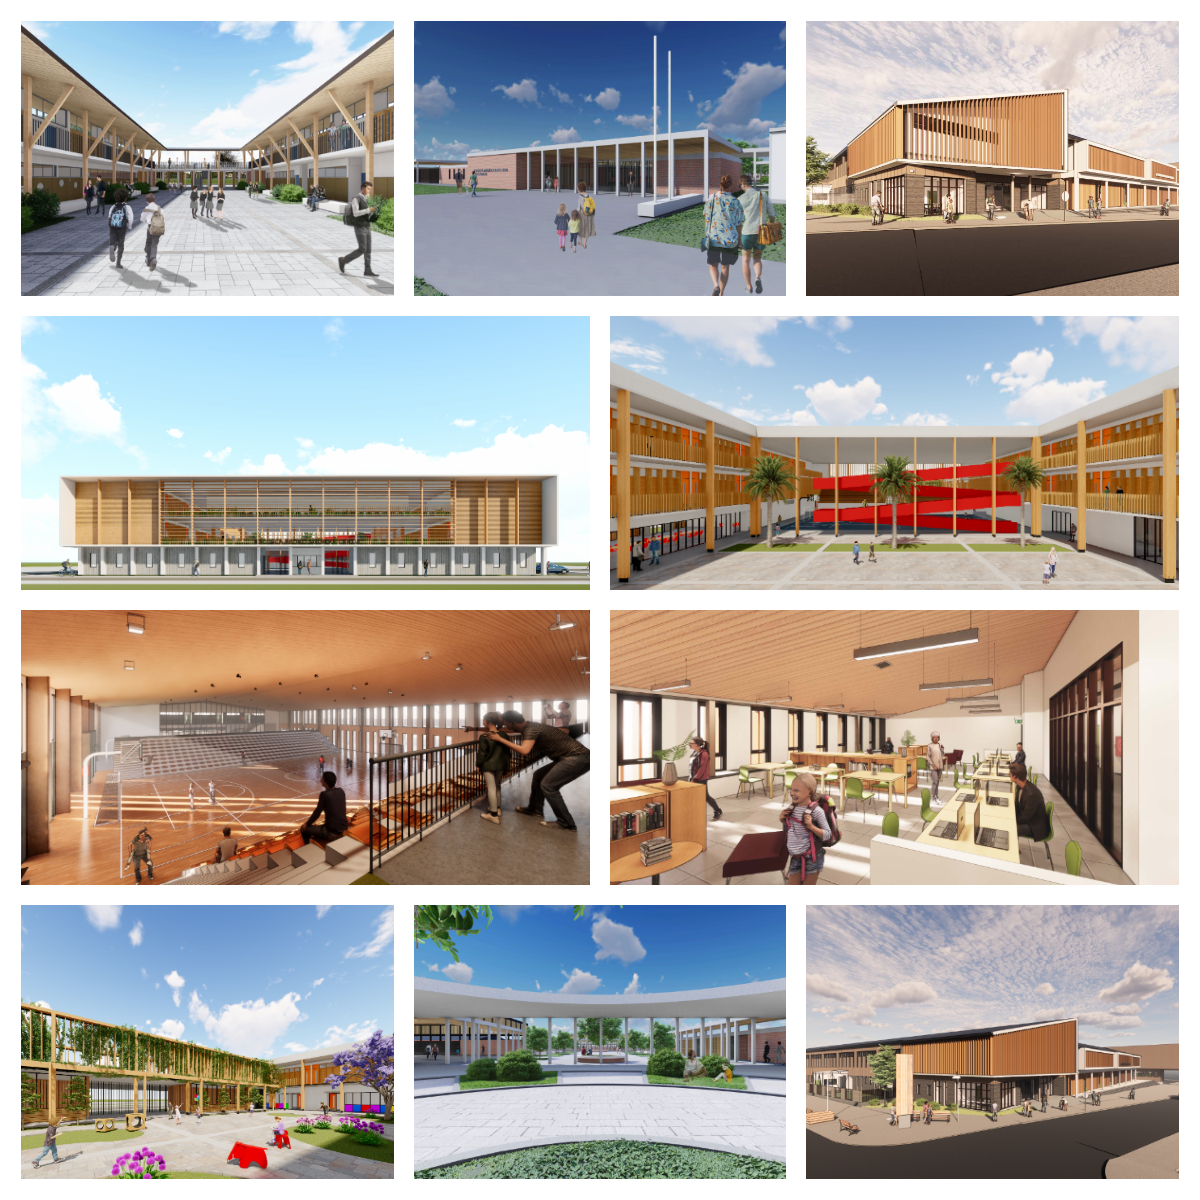 Cómo la arquitectura está transformando los espacios educativos en centros comunitarios